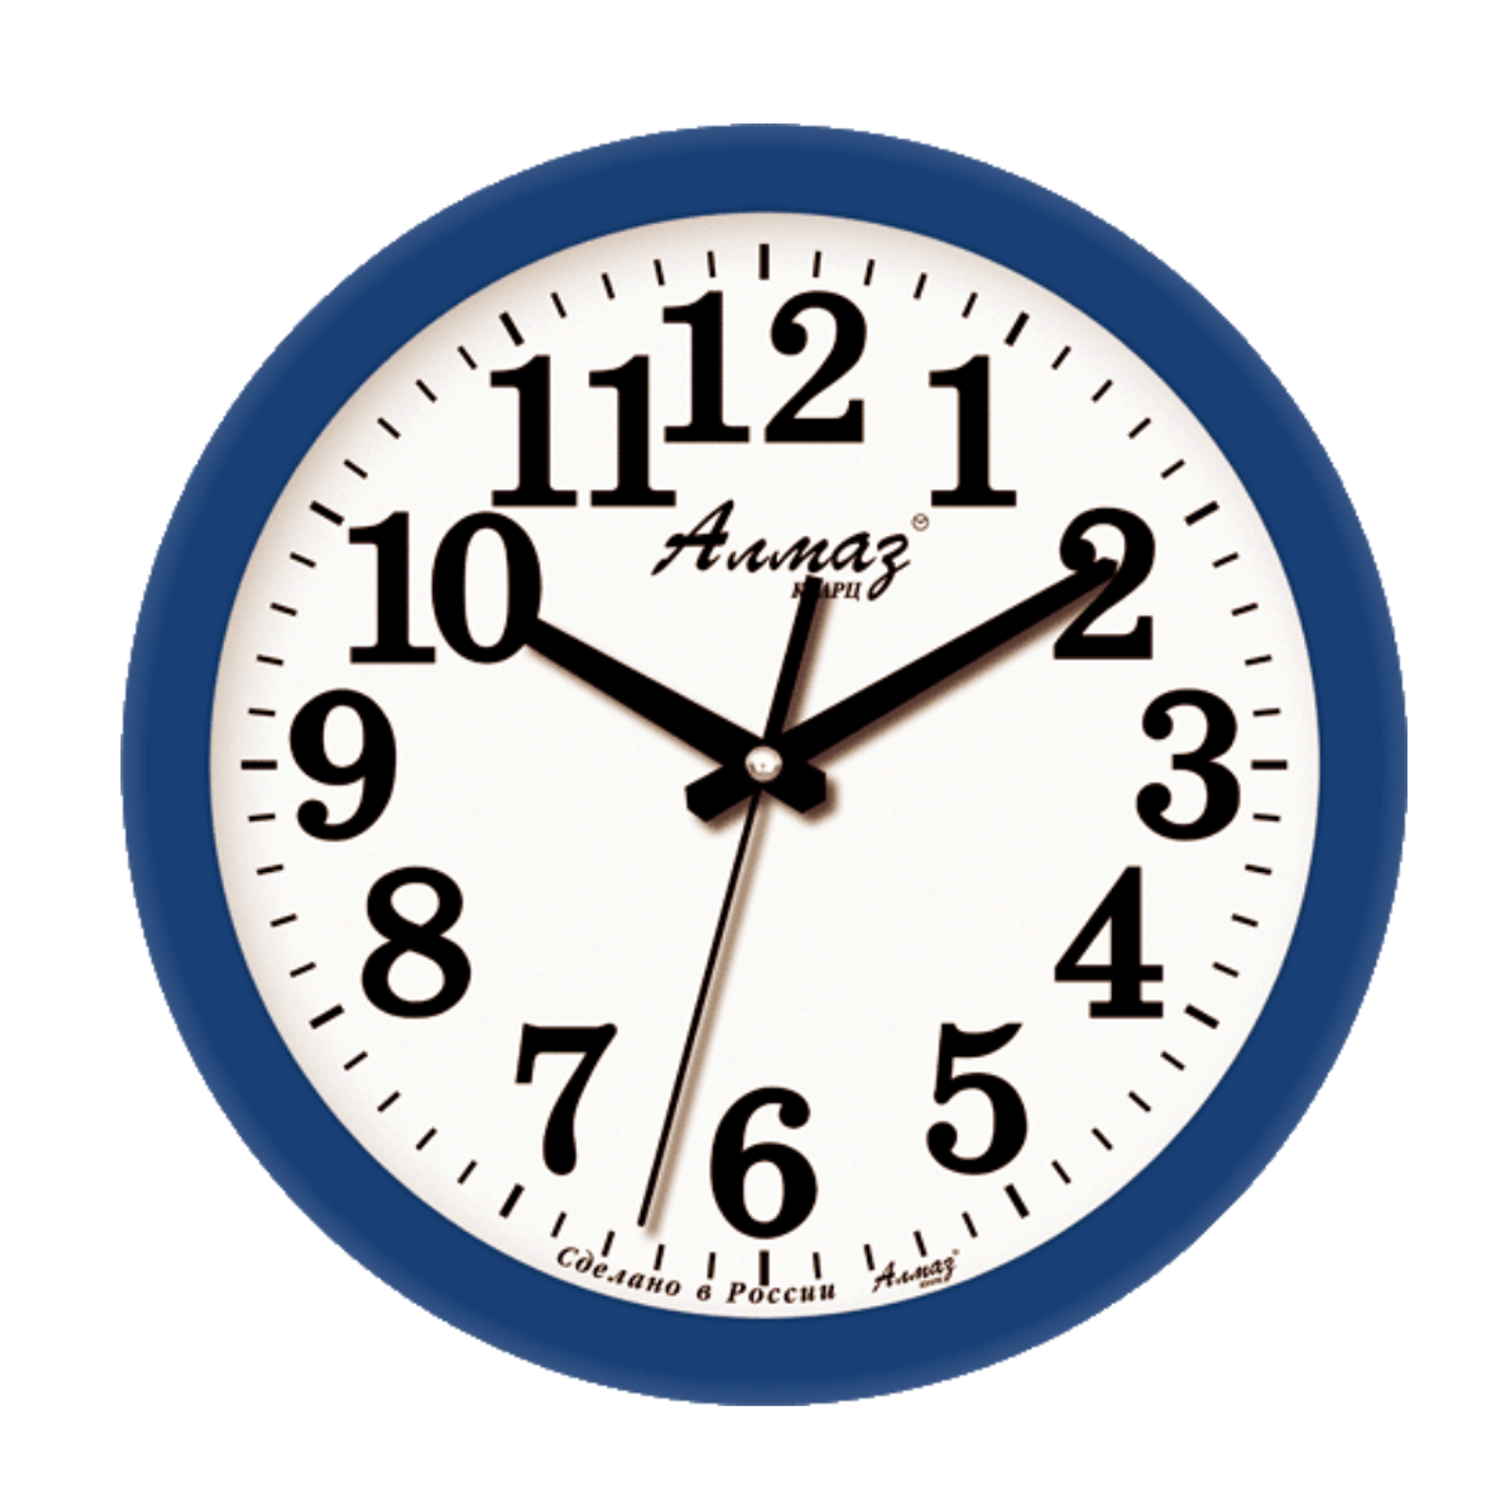 Часы настенные АлмазНН круглые синие 28.5 см - фото 1